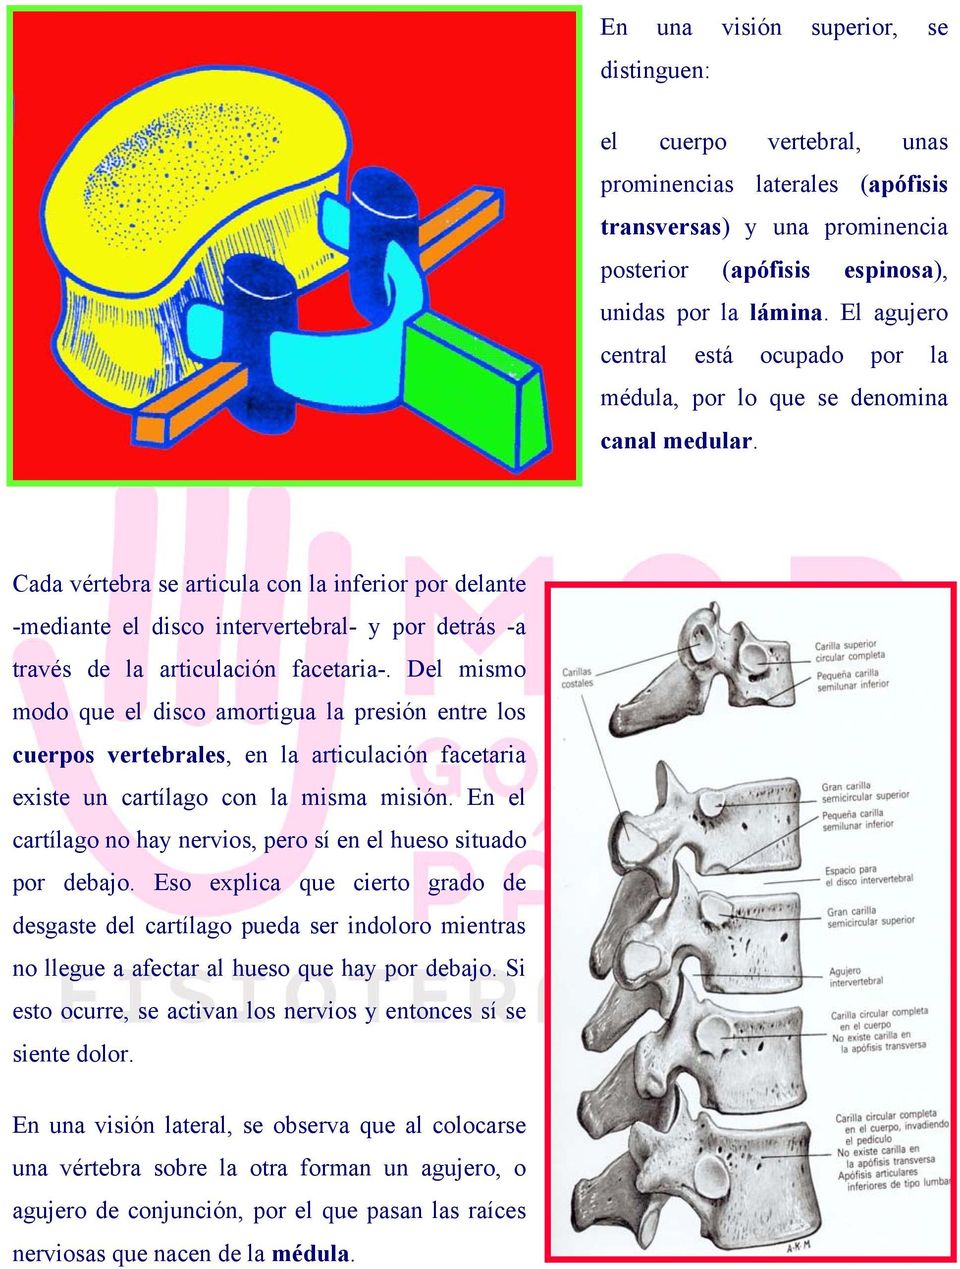 Cada vértebra se articula con la inferior por delante -mediante el disco intervertebral- y por detrás -a través de la articulación facetaria-.